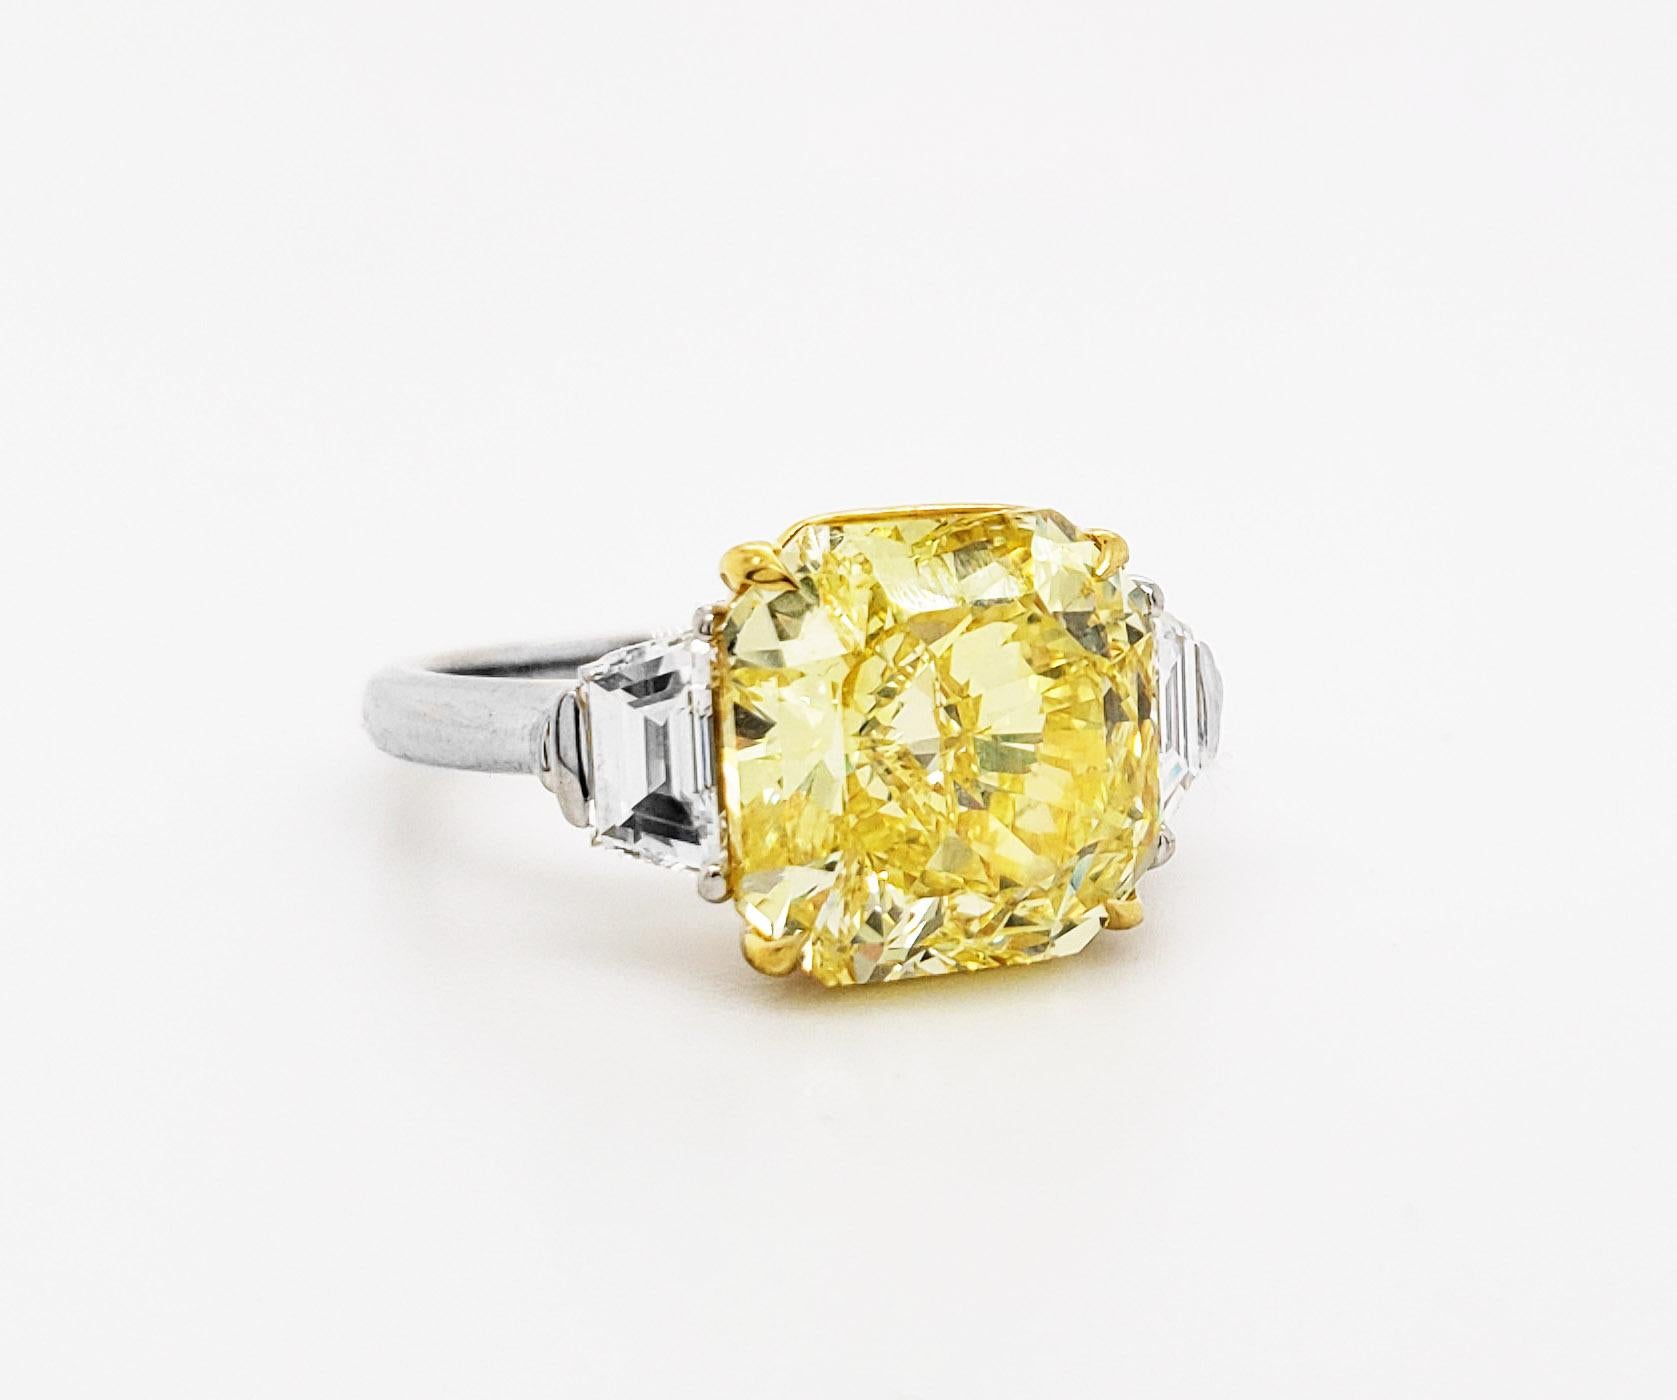 Von SCARSELLI, diese schöne Aussage Ring verfügt über eine 5,00 Karat Fancy Vivid Yellow Radiant Cut Diamond von VVS2 Klarheit flankiert mit trapezförmigen geschnittenen weißen Diamanten 0,70karat (.35 jeder) Siehe Bilder für Details. (siehe